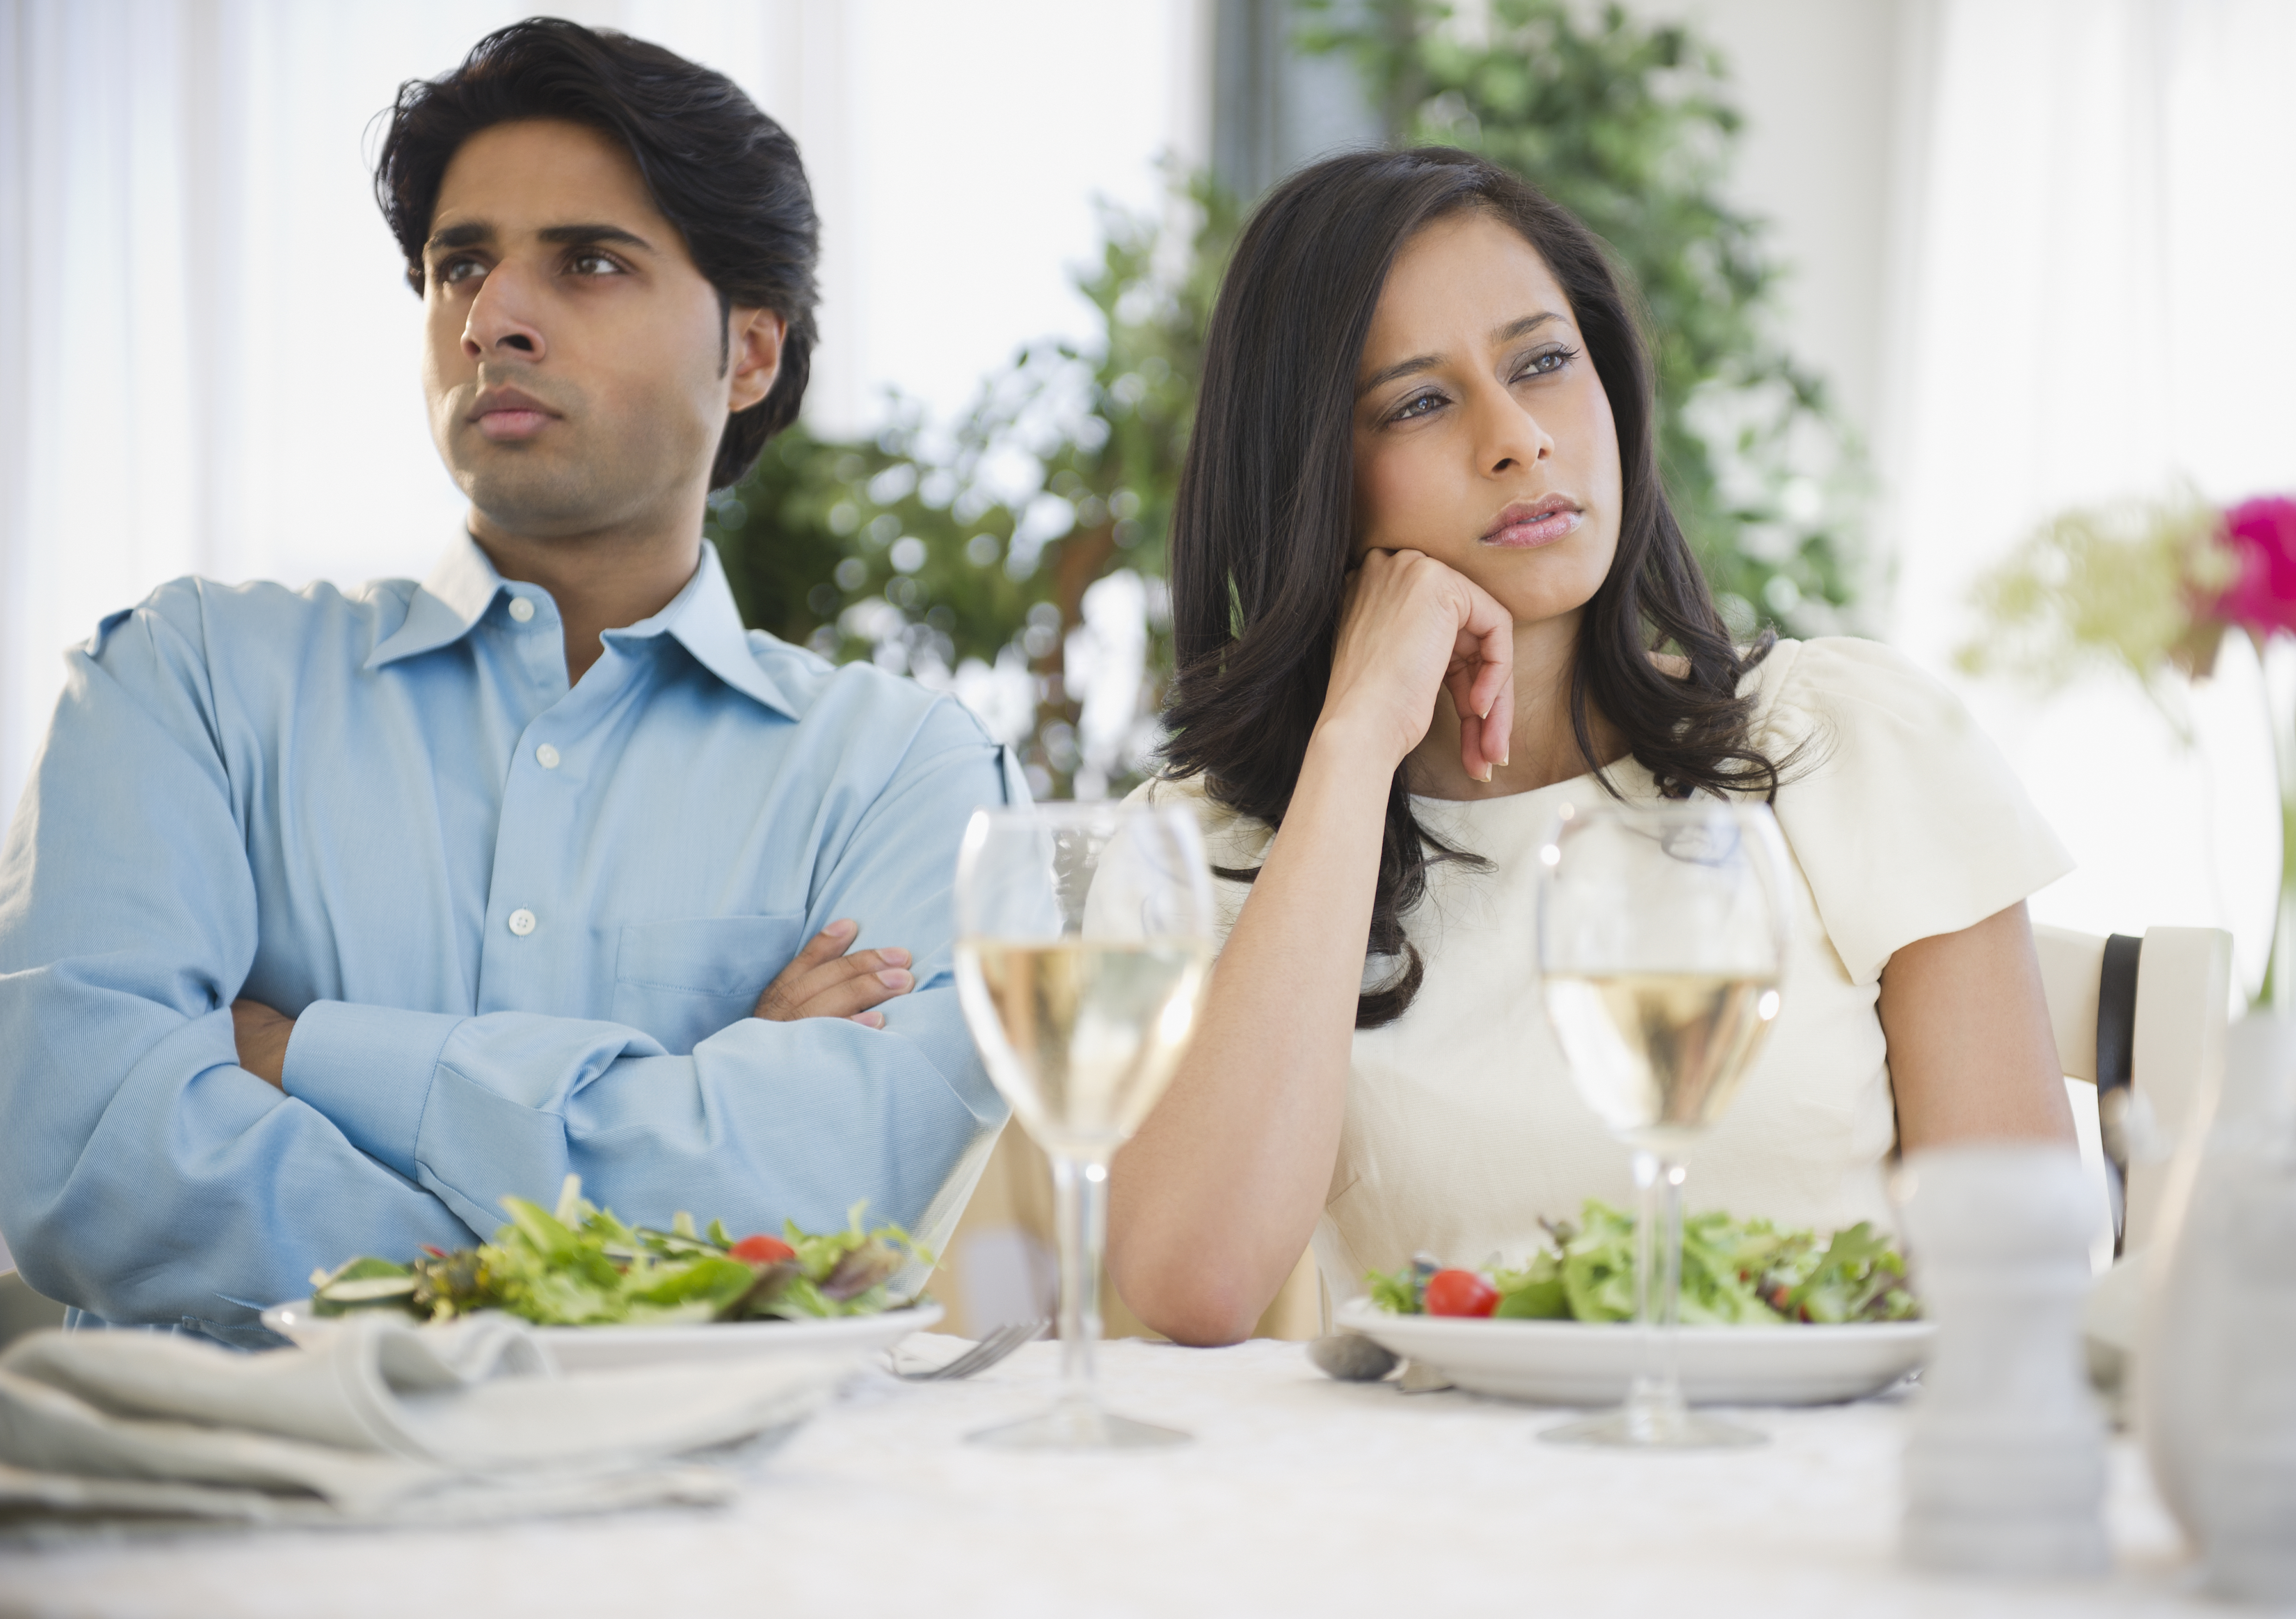 Un couple en colère dîne ensemble | Source : Getty Images